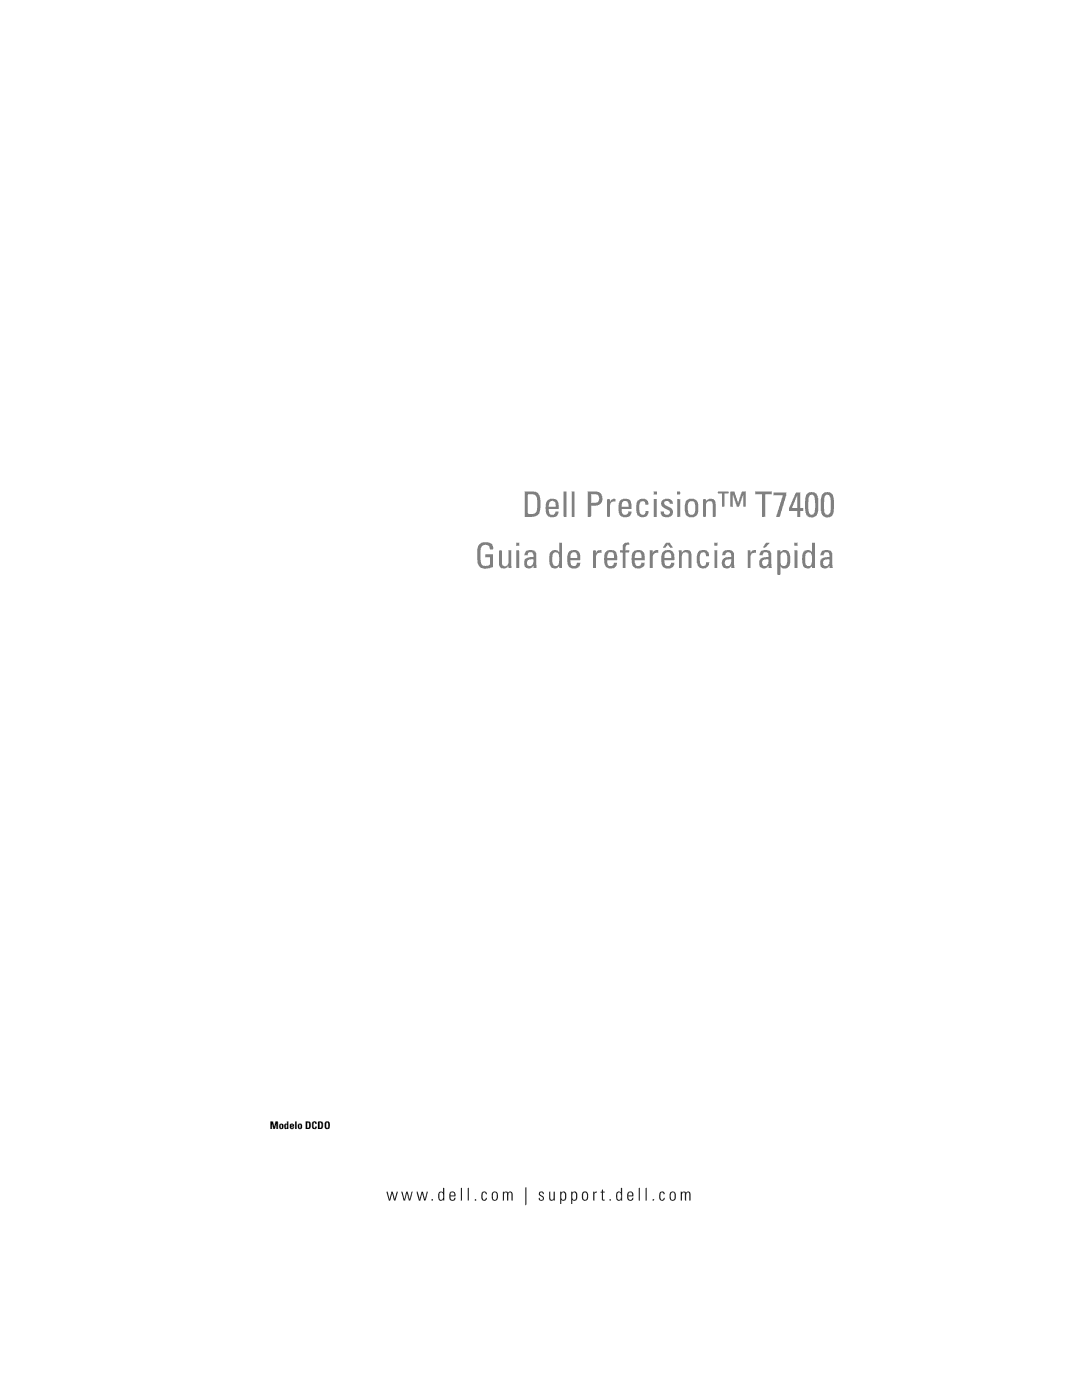 Dell DCDO manual Dell Precision T7400 Guia de referência rápida 